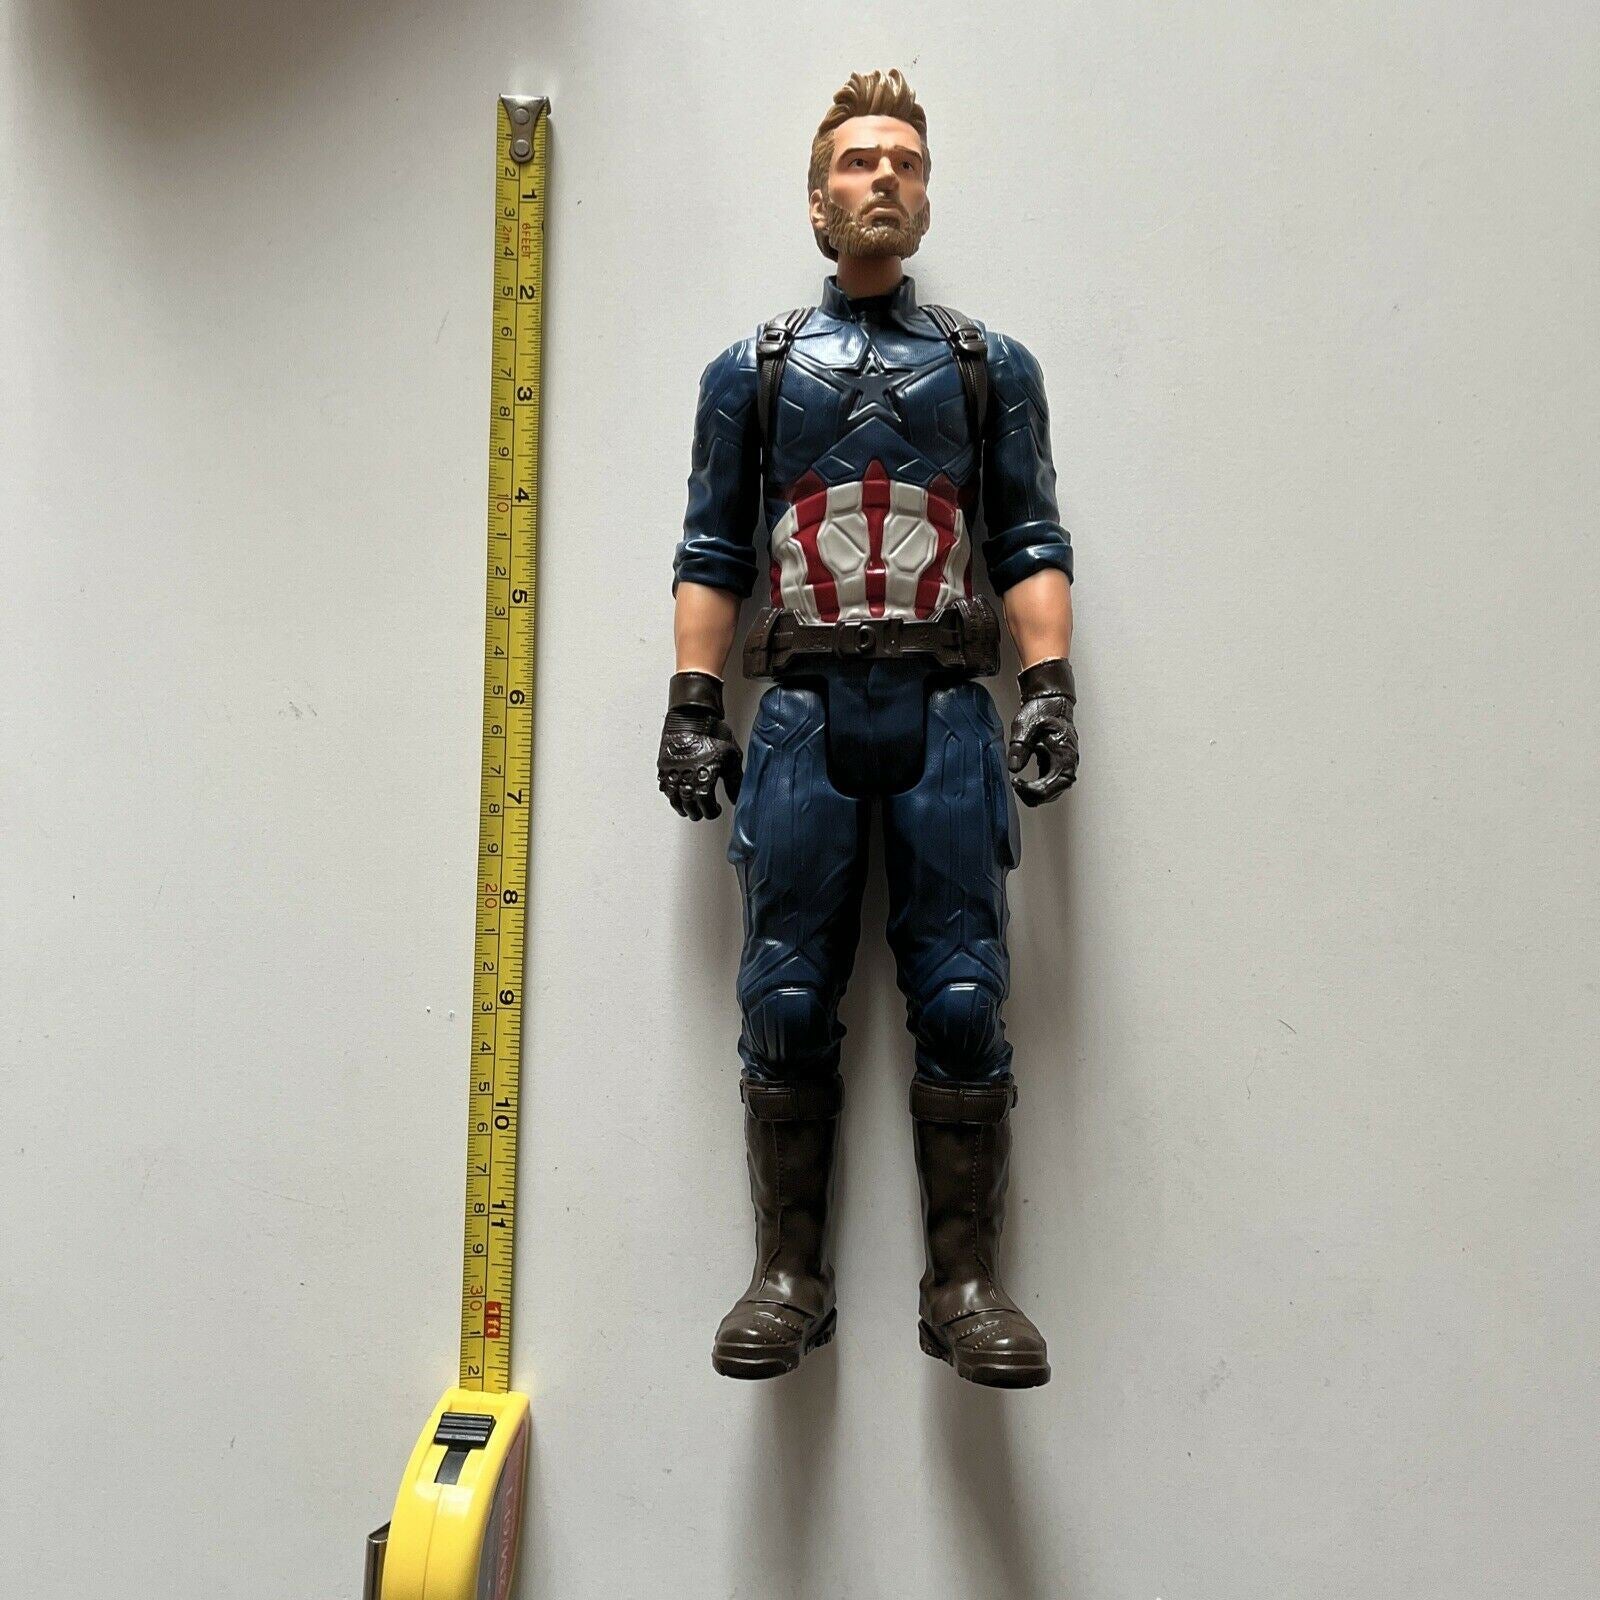 Hasbro avengers E1421 figurine 30cm Marvel's Captain America heros